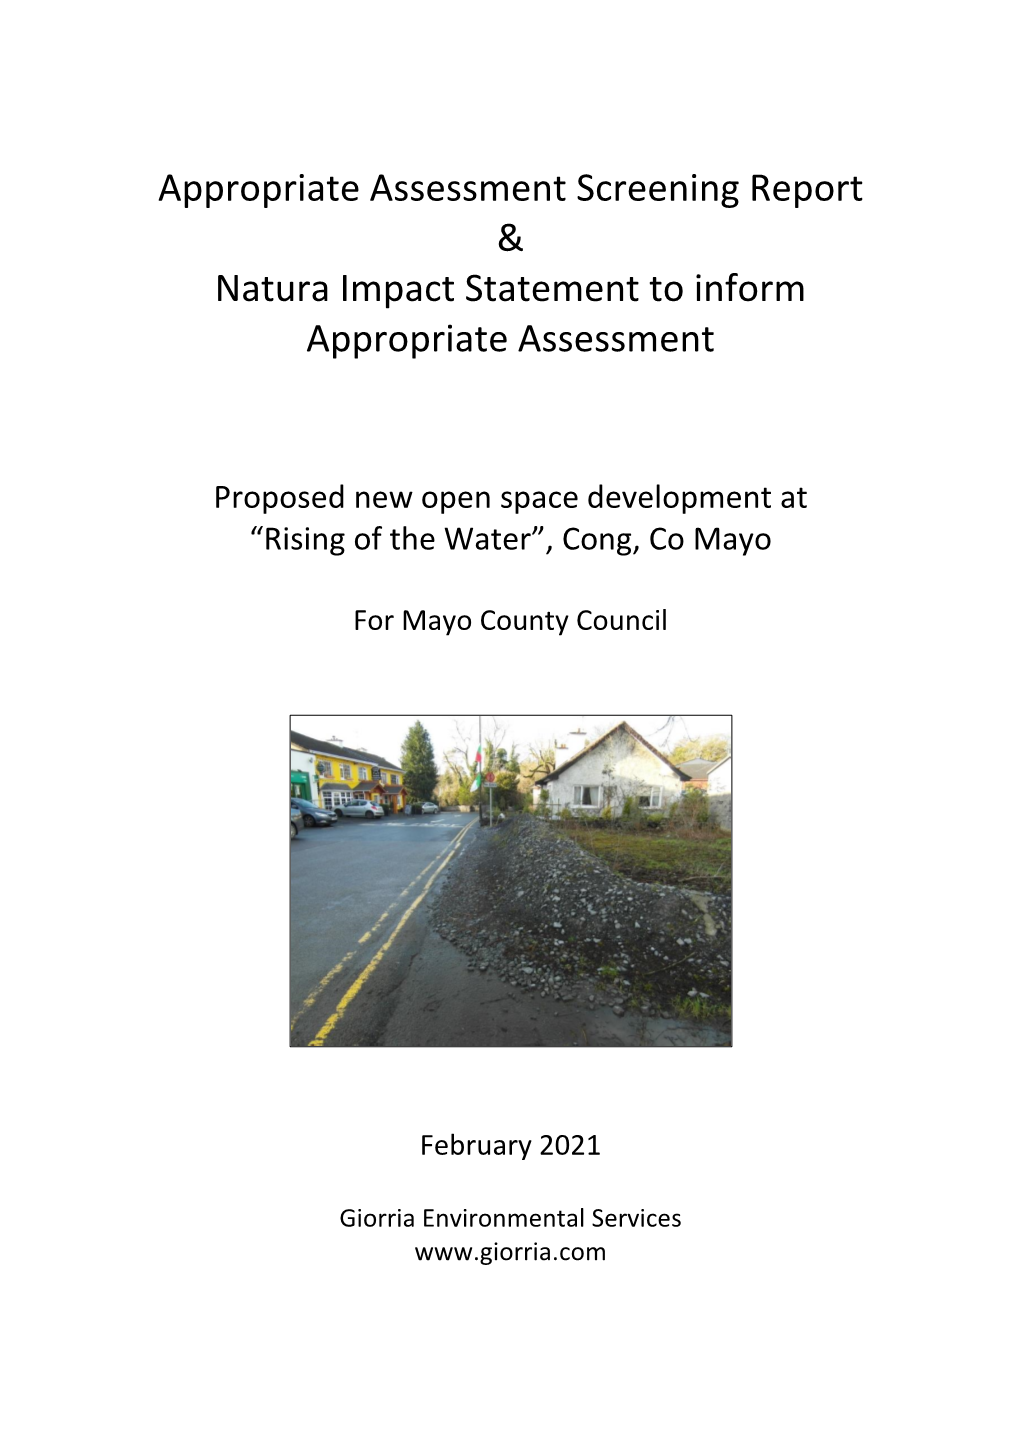 Natura Impact Statement (NIS)